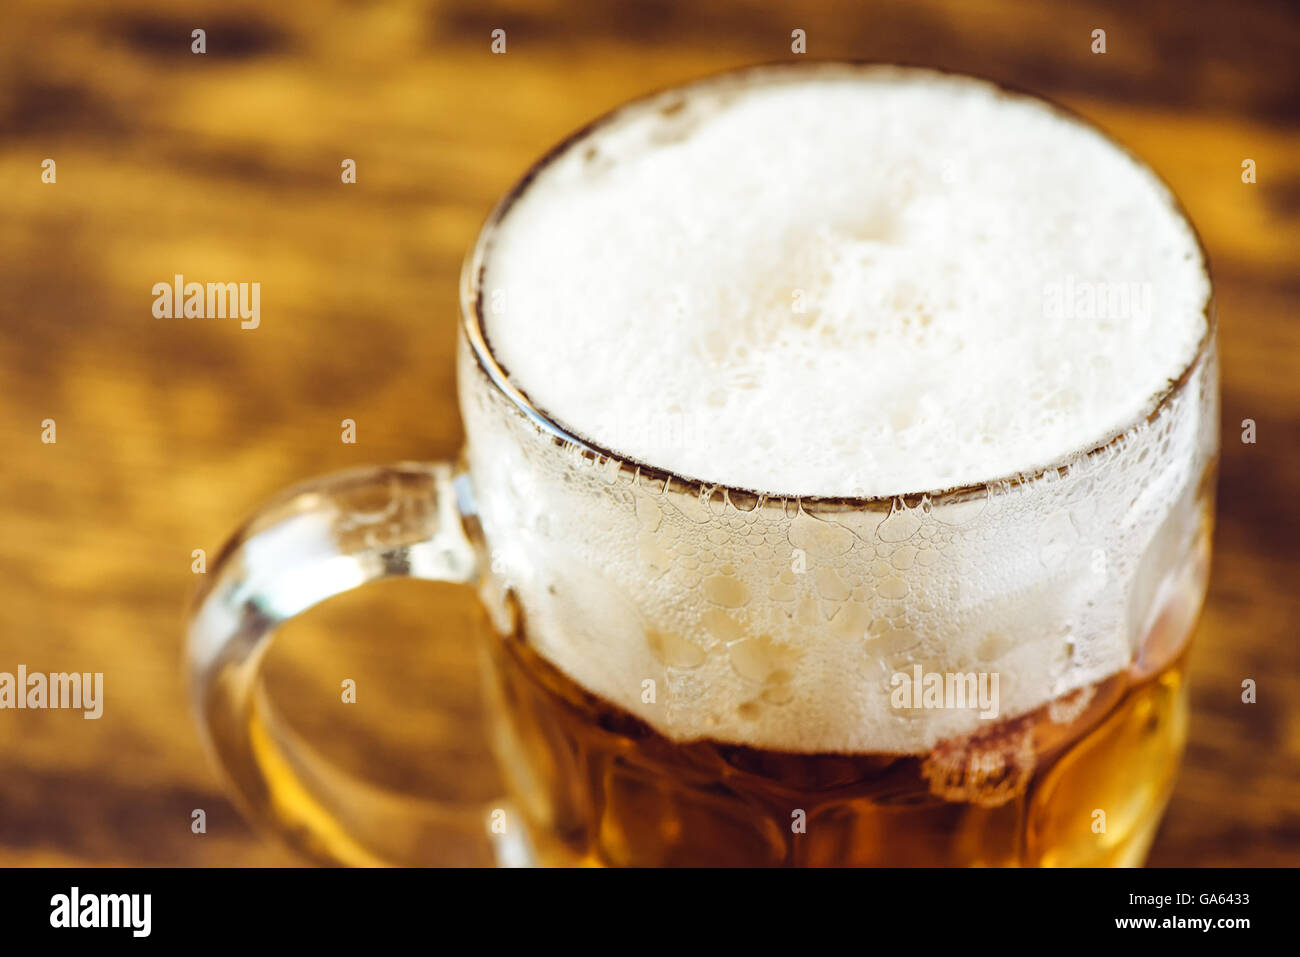 Bierkrug voll von kaltem frischem Alkohol trinken auf hölzernen Hintergrund, selektiven Fokus Stockfoto